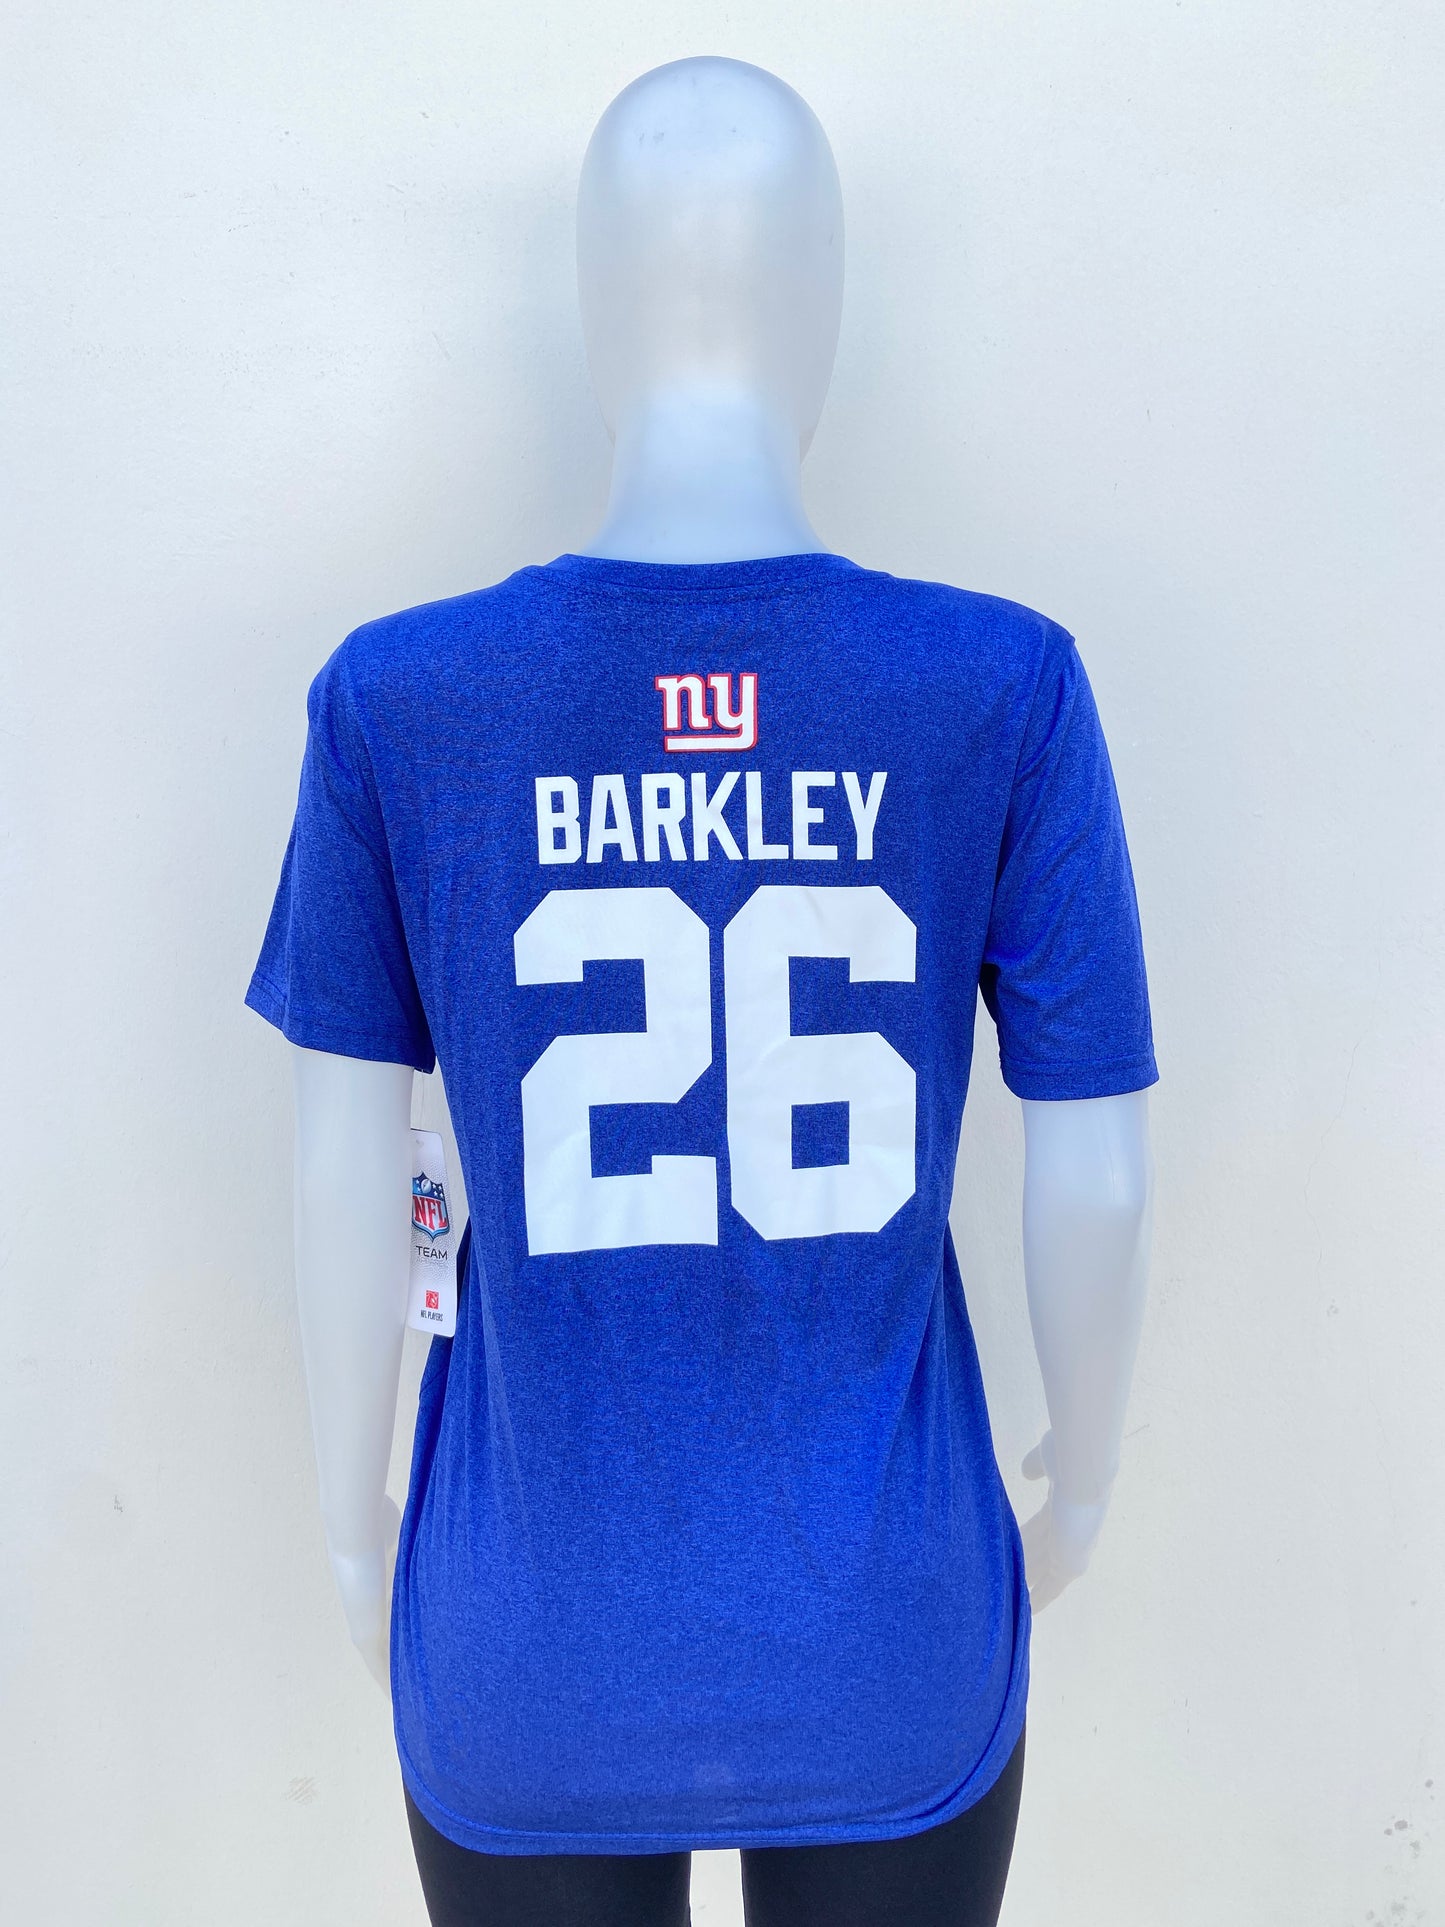 T-shirt NFL original azul con letras NY en blanco y el numero 26 atrás.